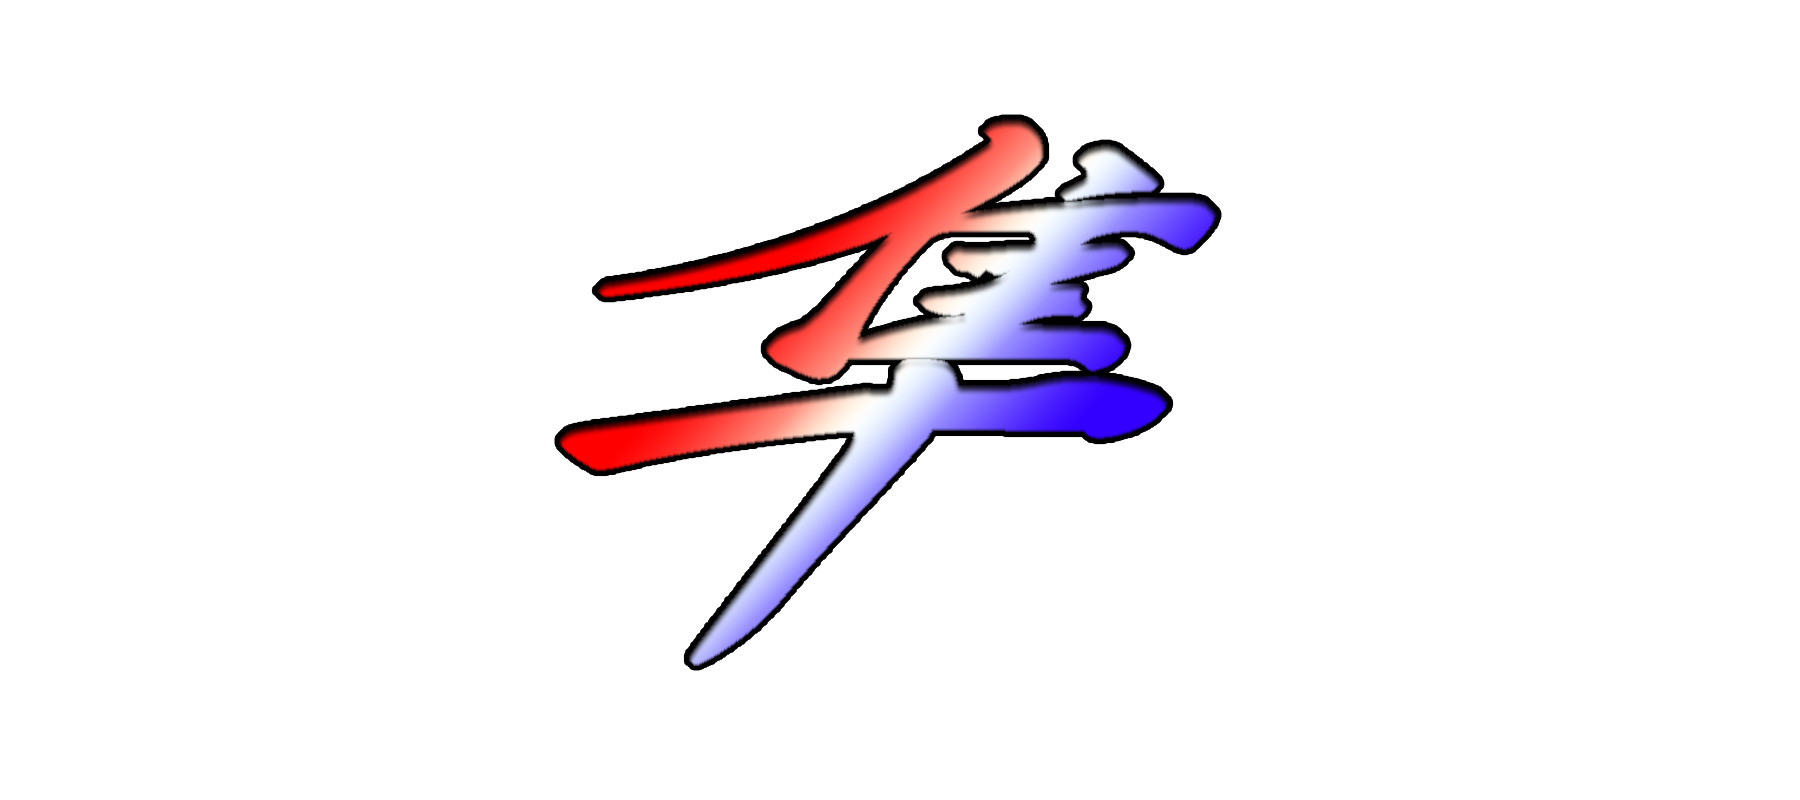 kanji1.jpg